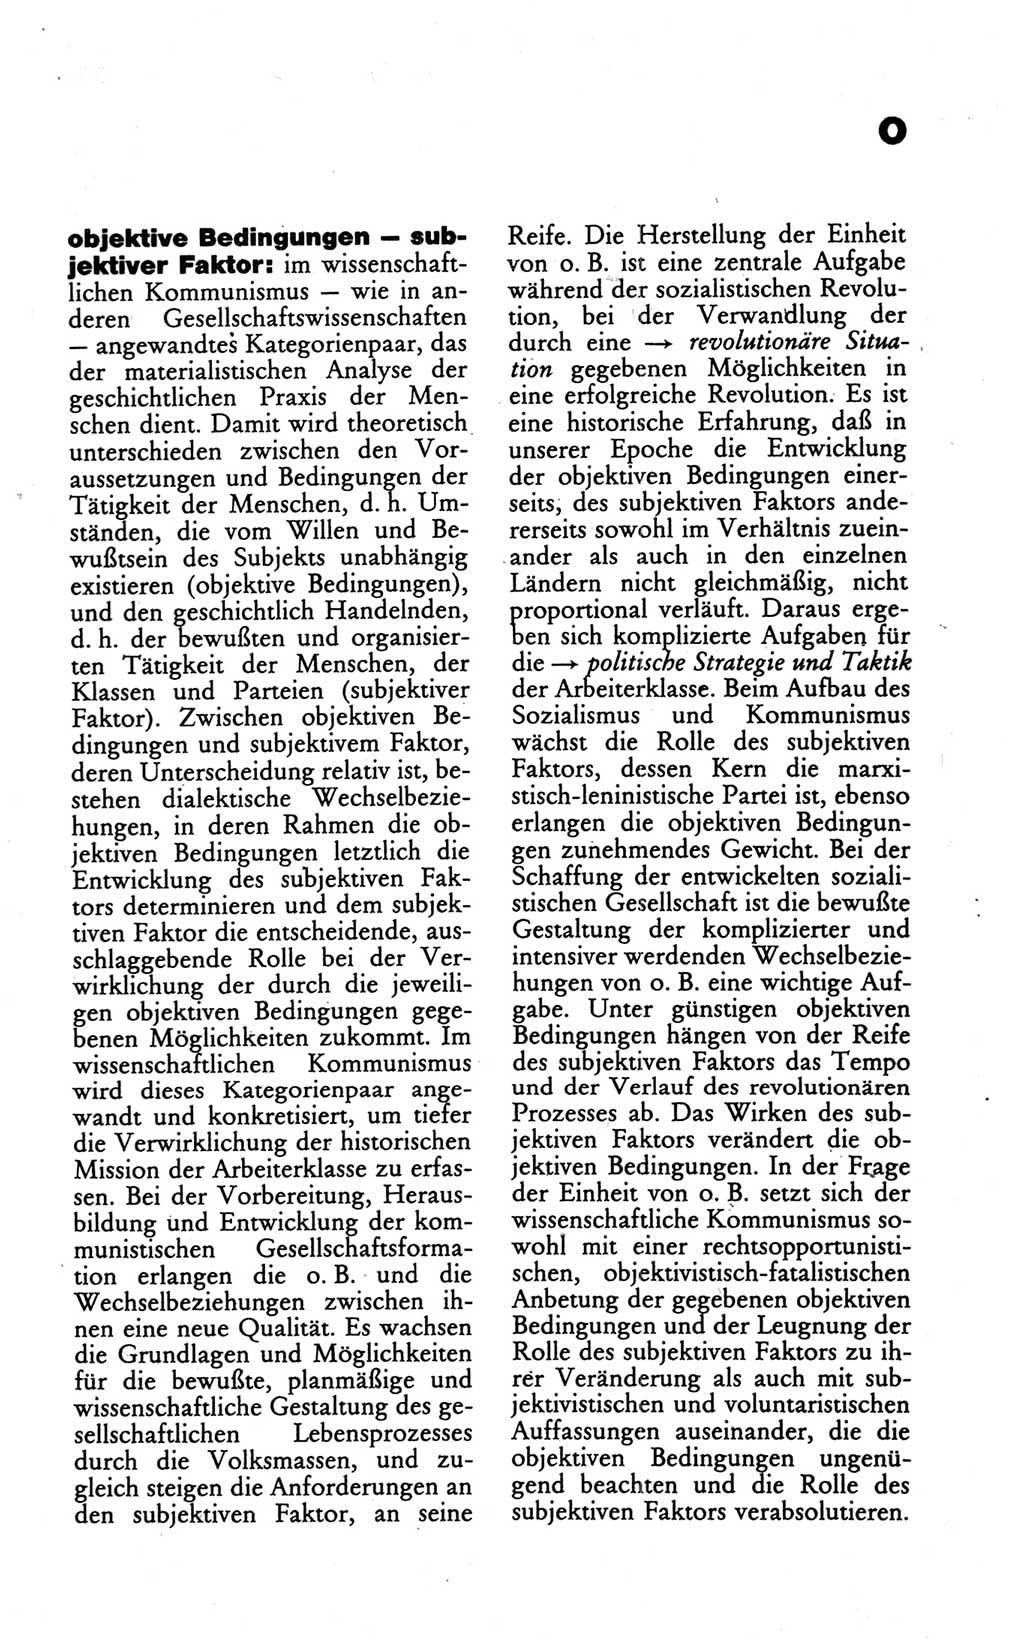 Wörterbuch des wissenschaftlichen Kommunismus [Deutsche Demokratische Republik (DDR)] 1986, Seite 275 (Wb. wiss. Komm. DDR 1986, S. 275)